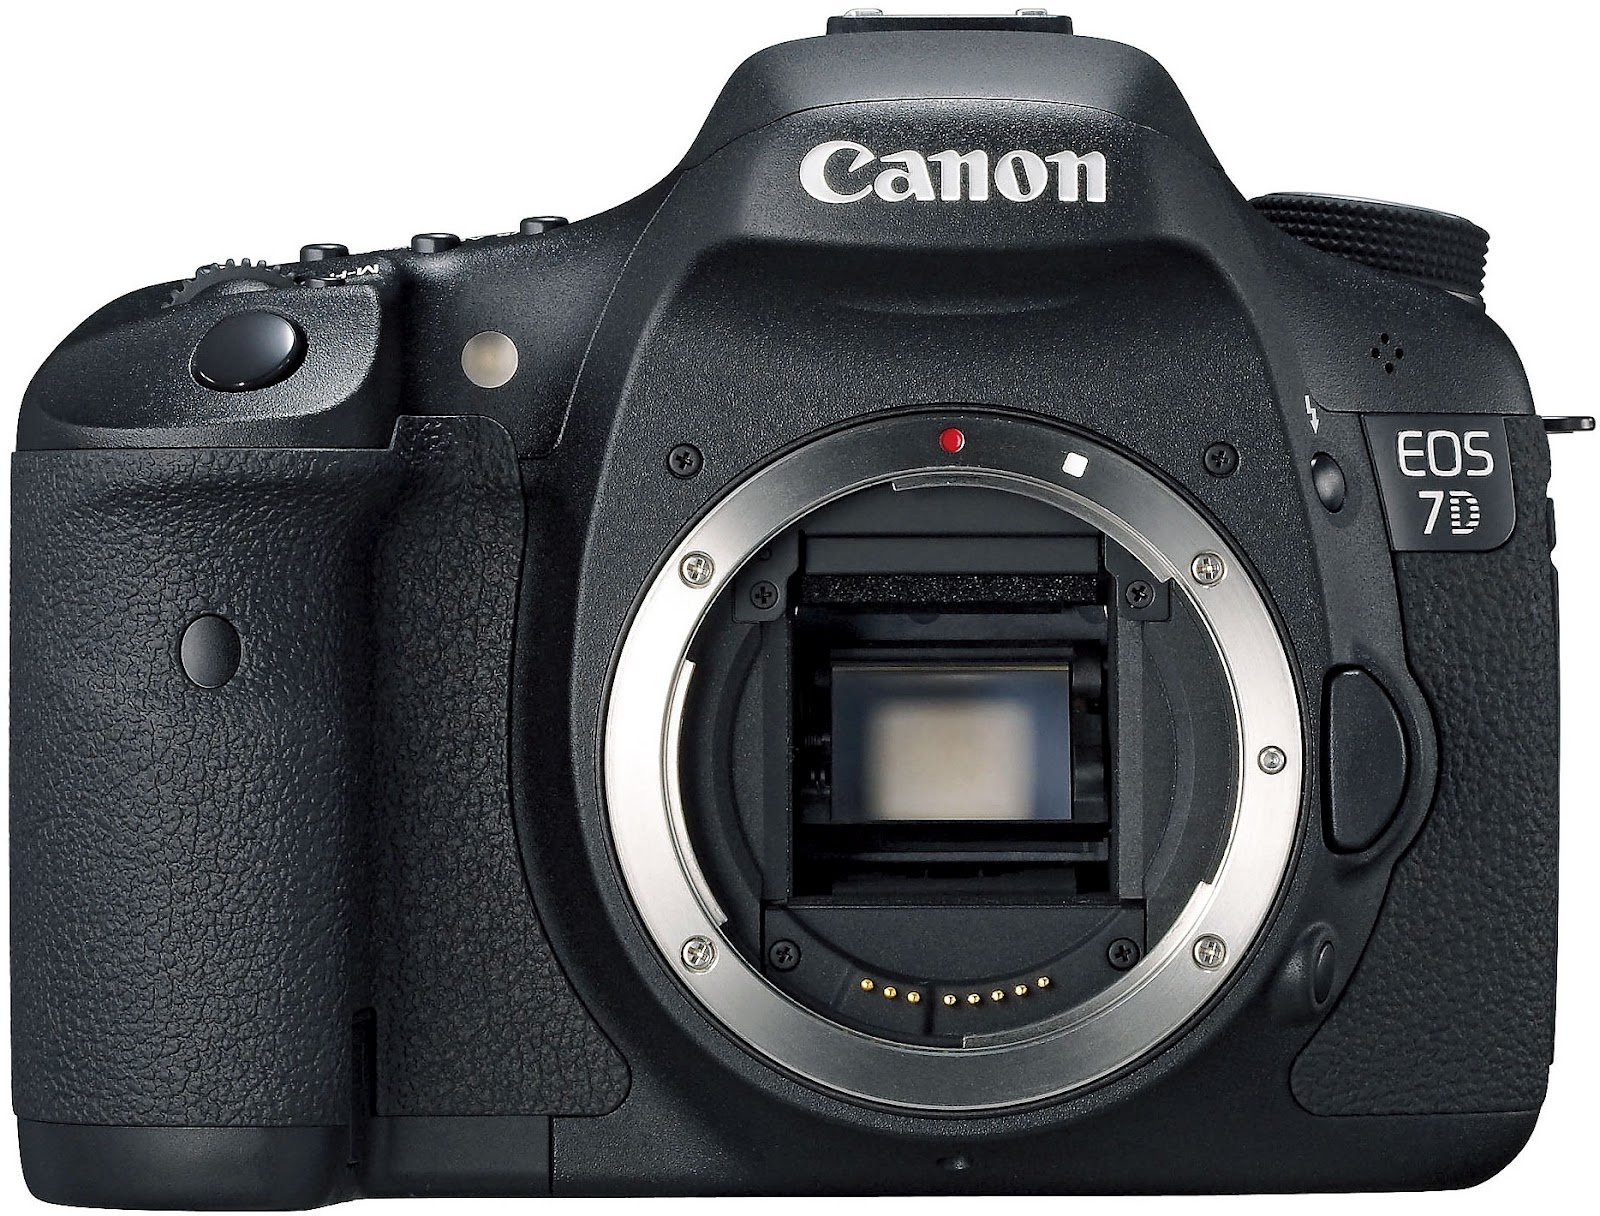 Canon Eos 7d Best Price